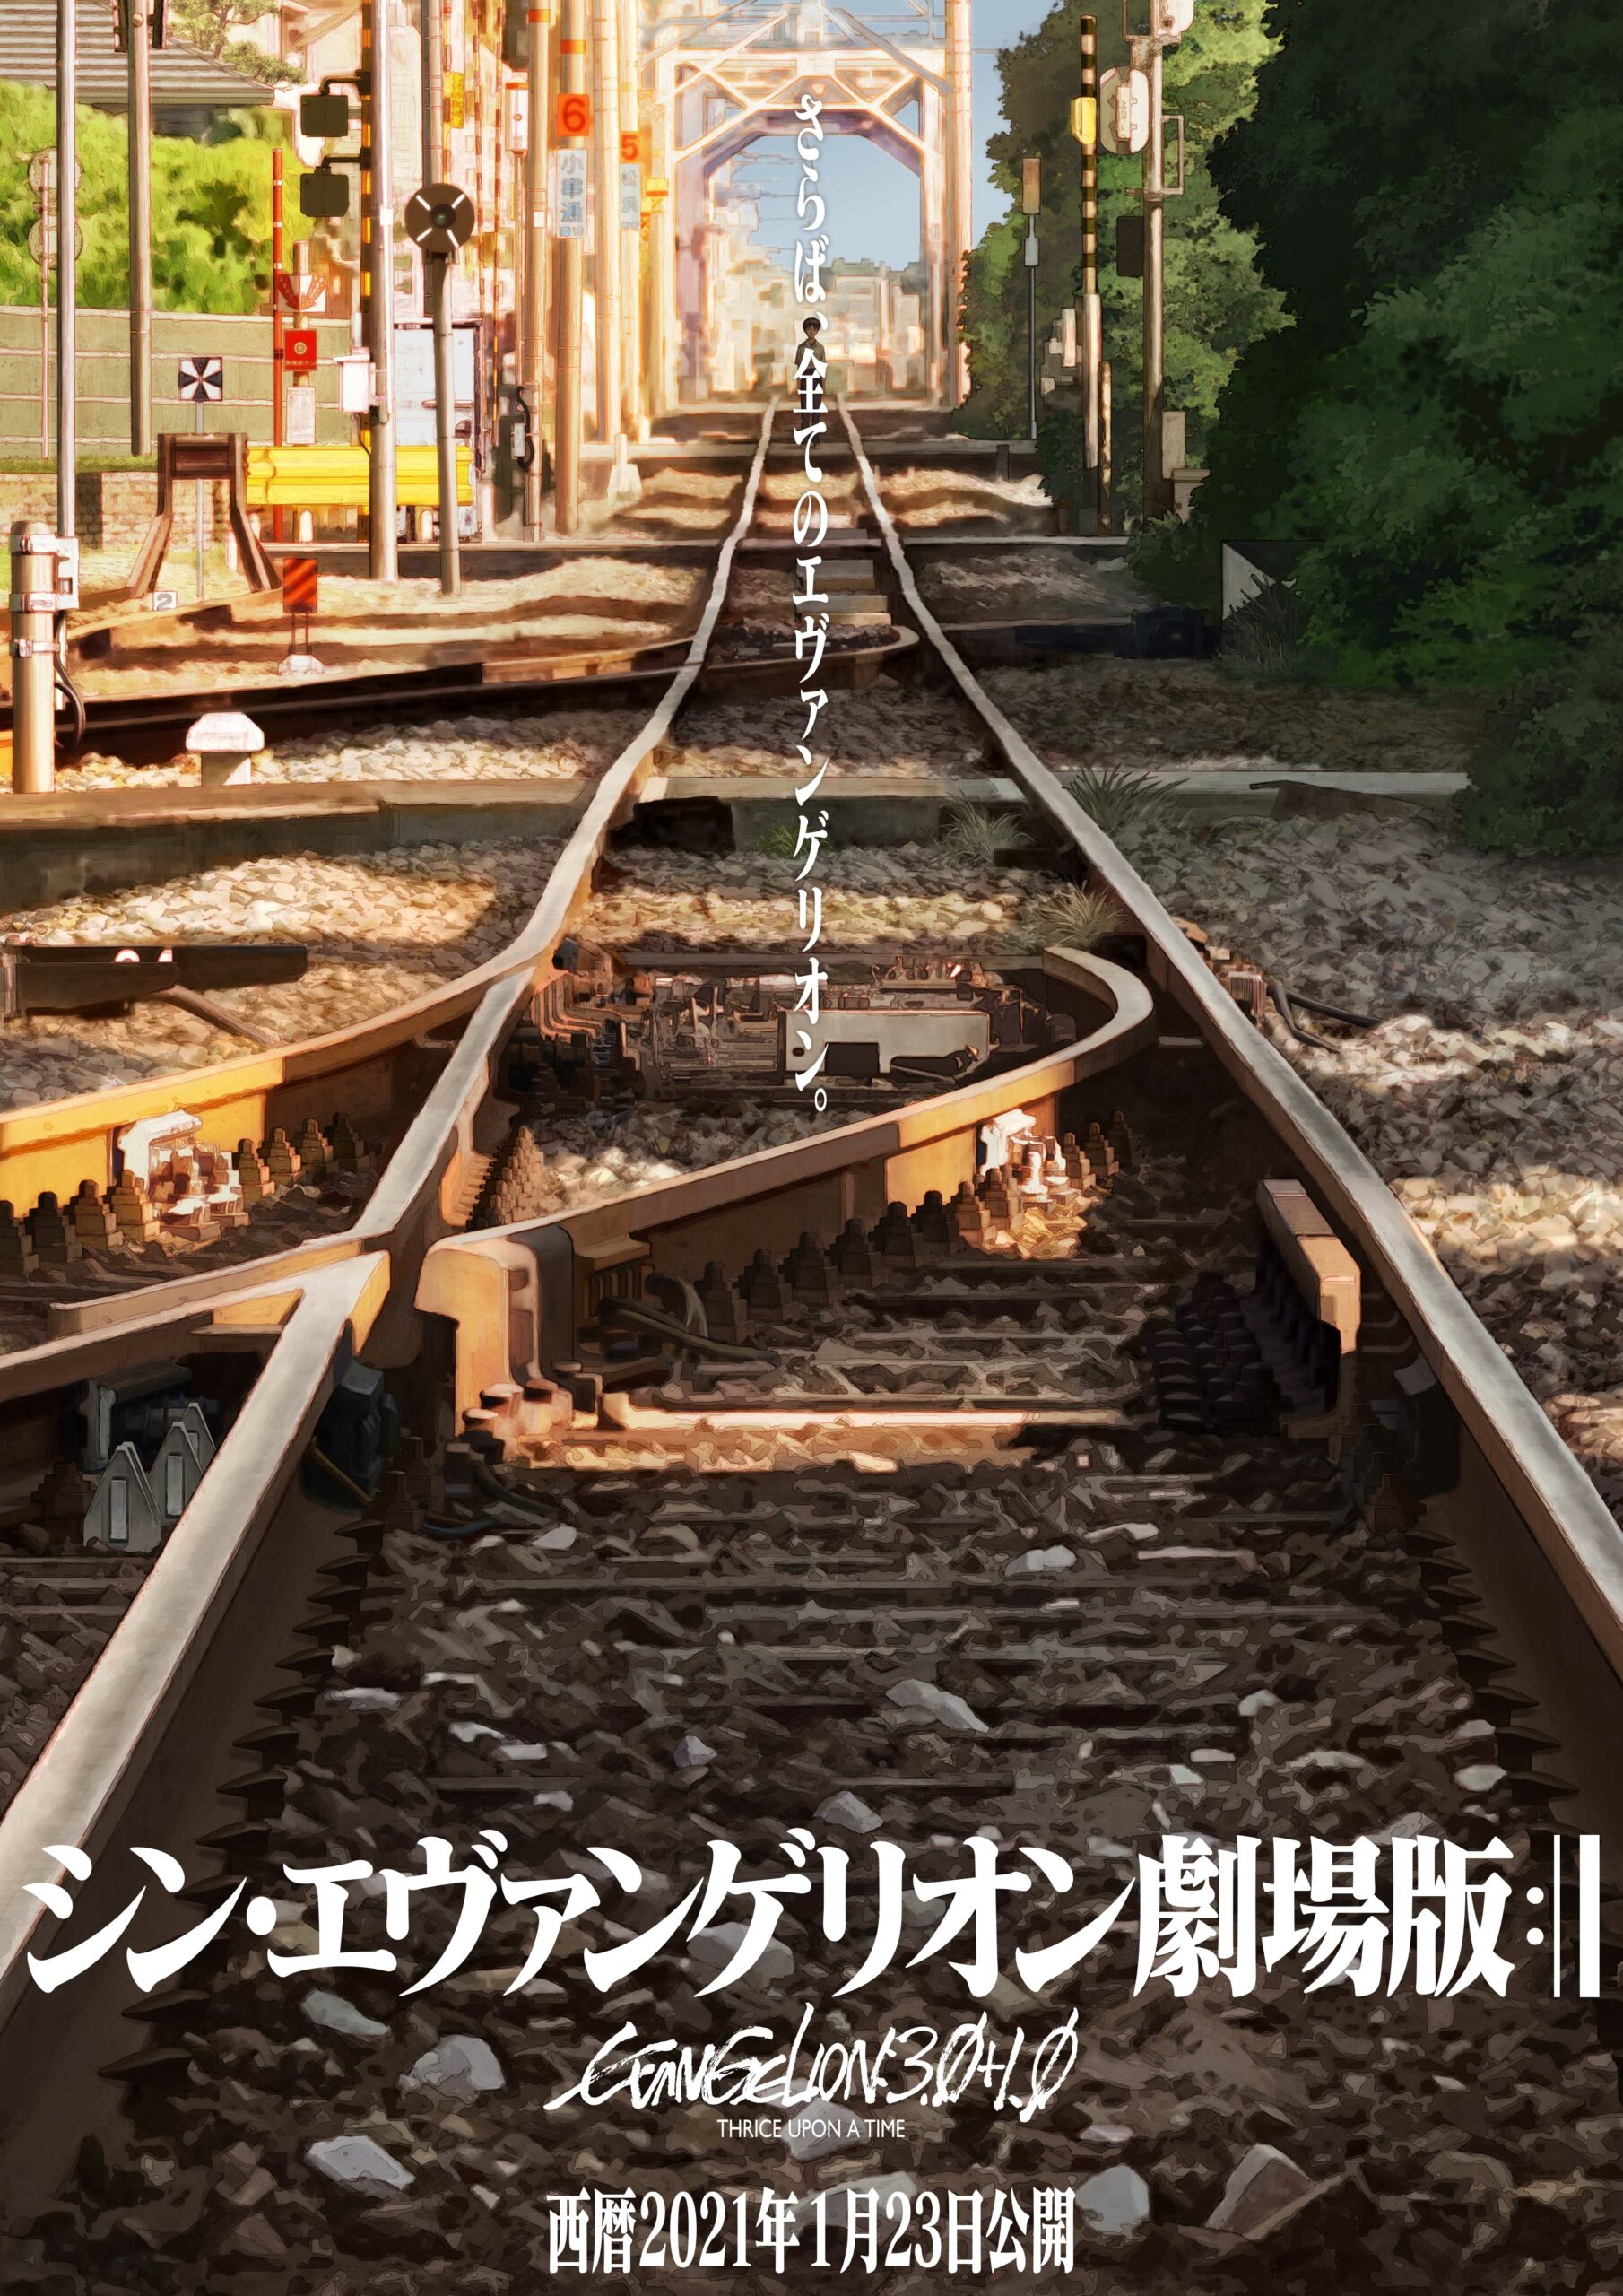 Evangelion: decisão da estreia do filme final, terceiro teaser lançado